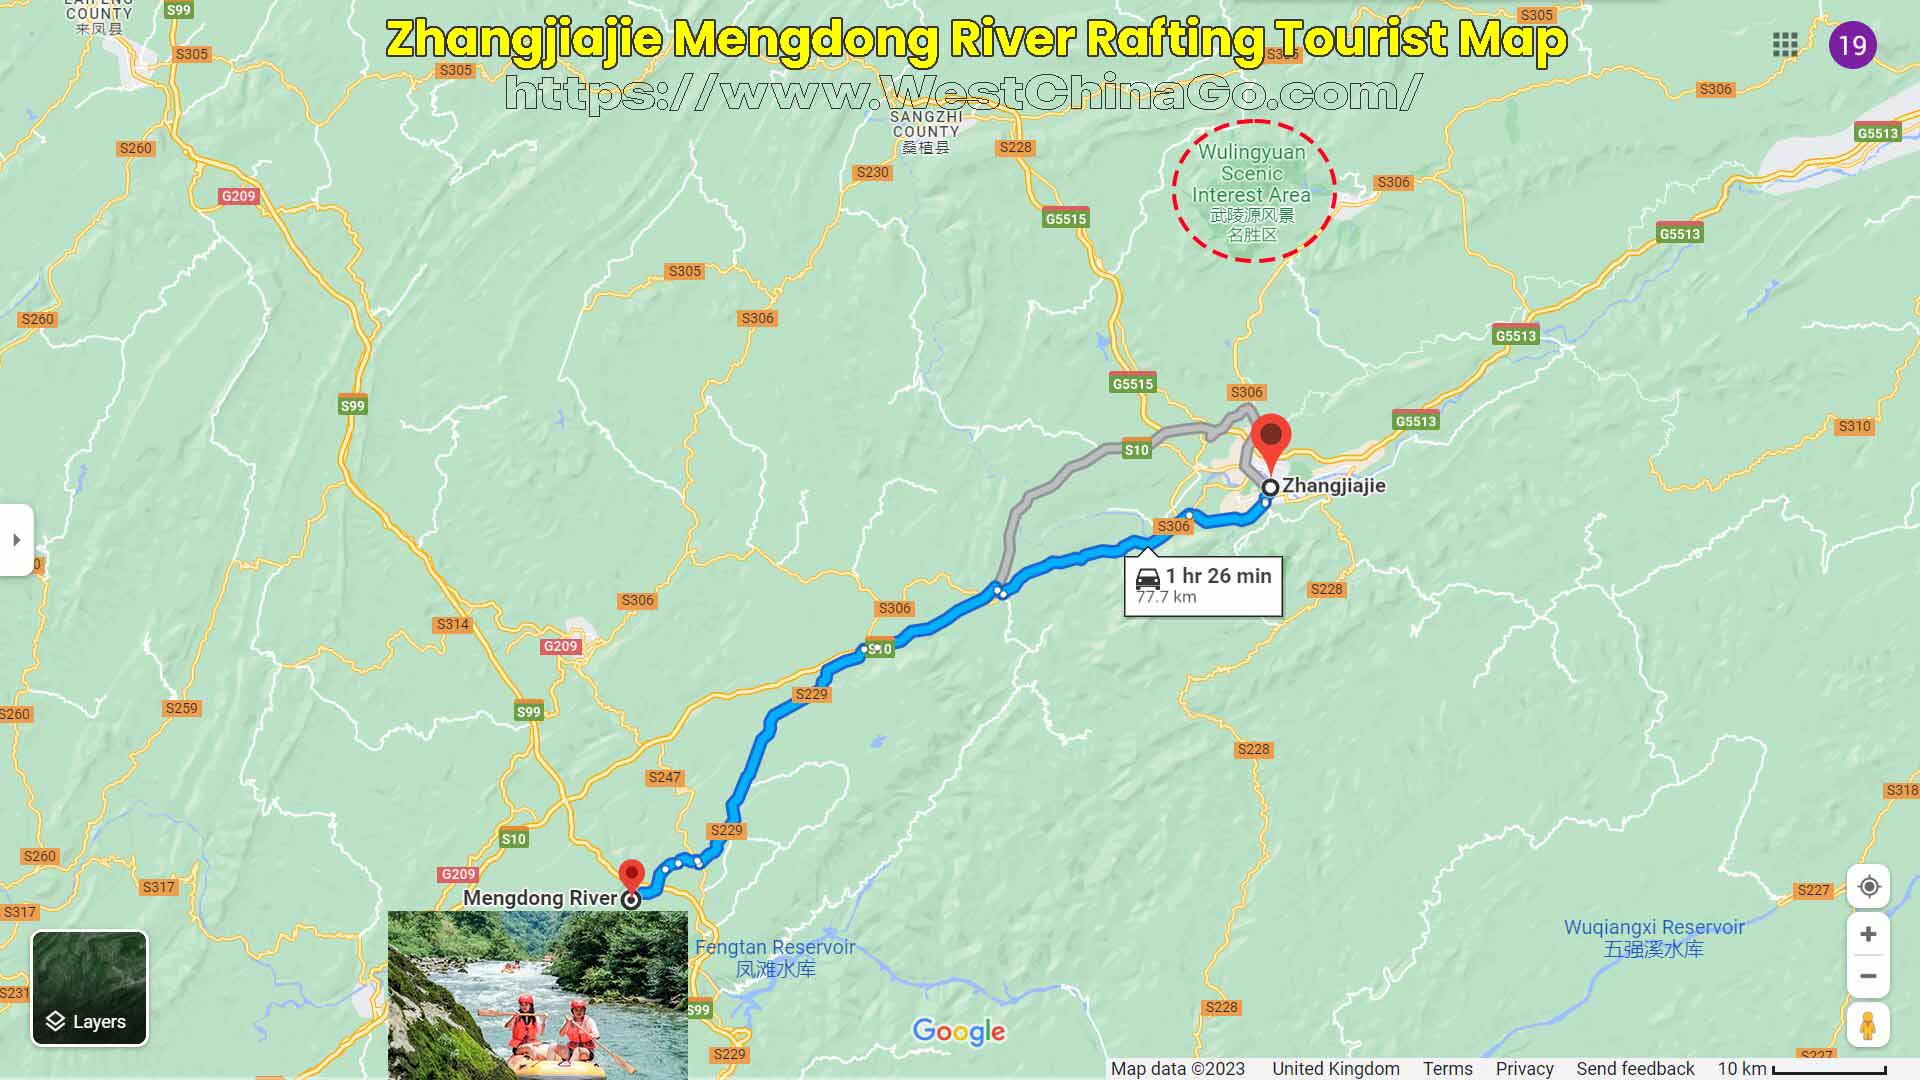 Zhangjiajie Mengdong River Rafting Tourist Map